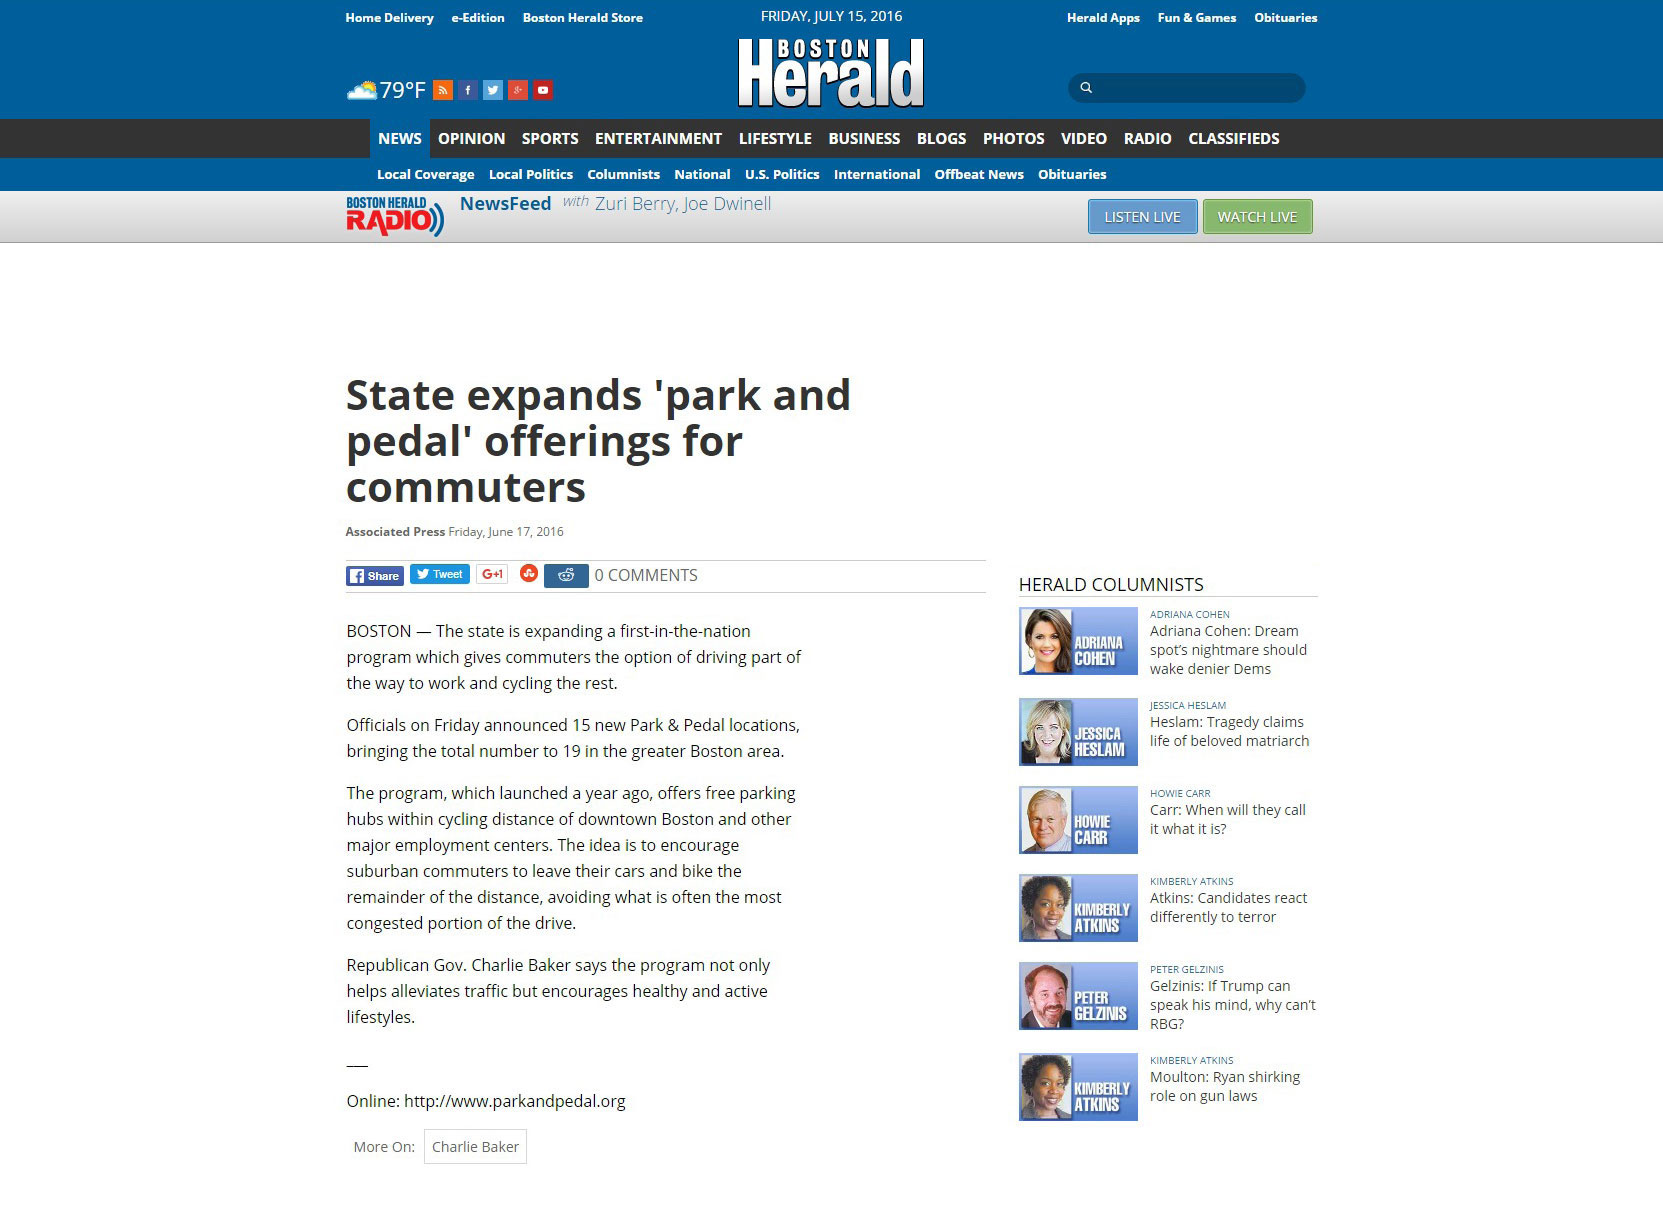 Boston-Herald-Park&Pedal-June-17-2016-v2